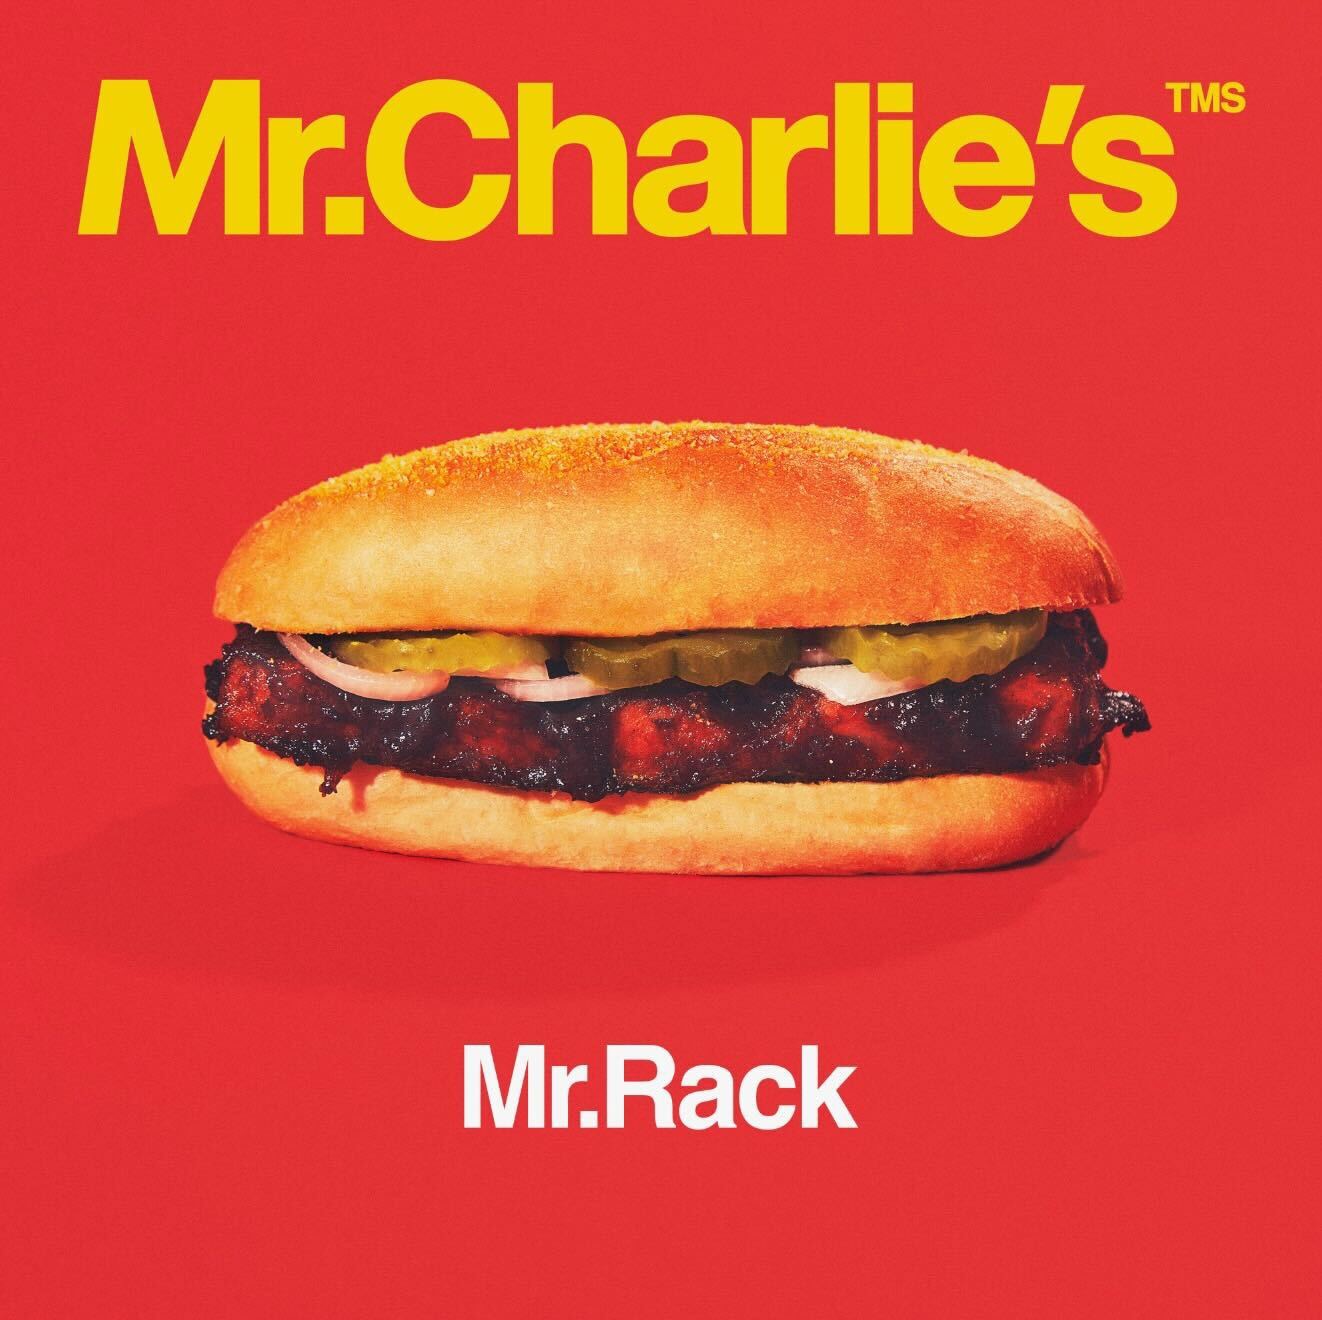 VegNews.MrRack.MrCharlies